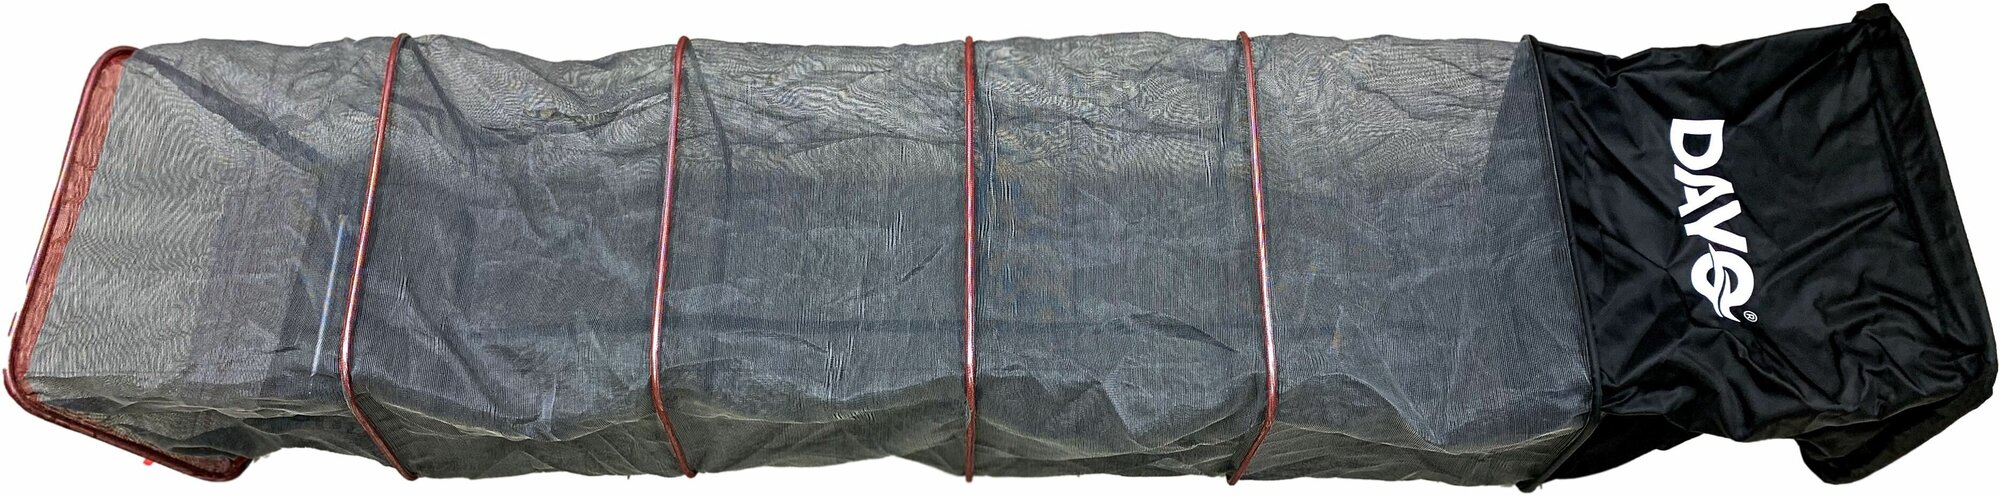 Садок береговой DAYO с колышком серый, прямоугольный, текстиль+сетчатая ткань, длина 400см